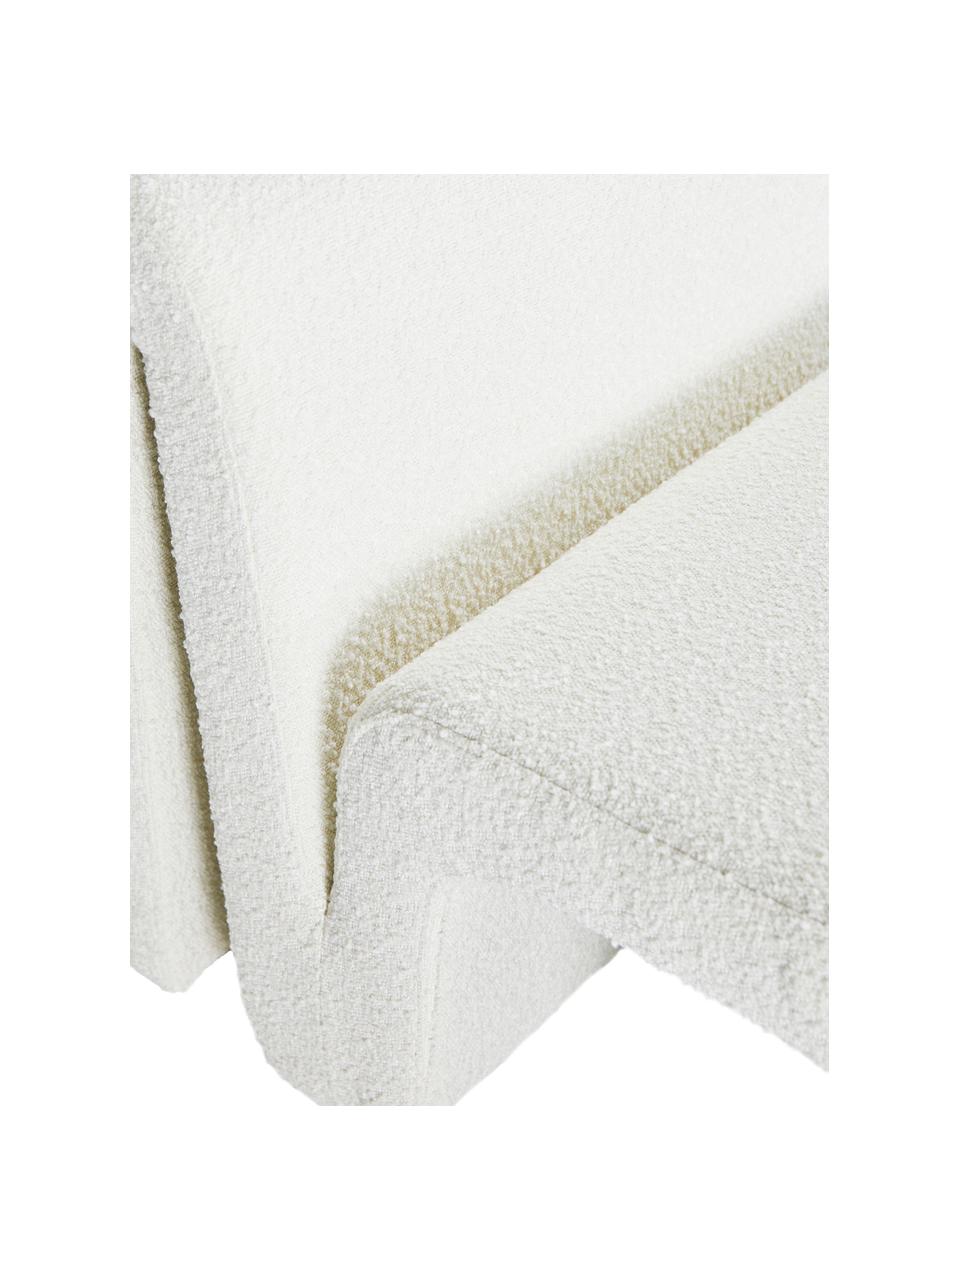 Bouclé loungefauteuil Odette in wit, Bekleding: 95% polyester (bouclé), 5, Frame: grenenhout, multiplex, Bouclé wit, B 70 x D 76 cm